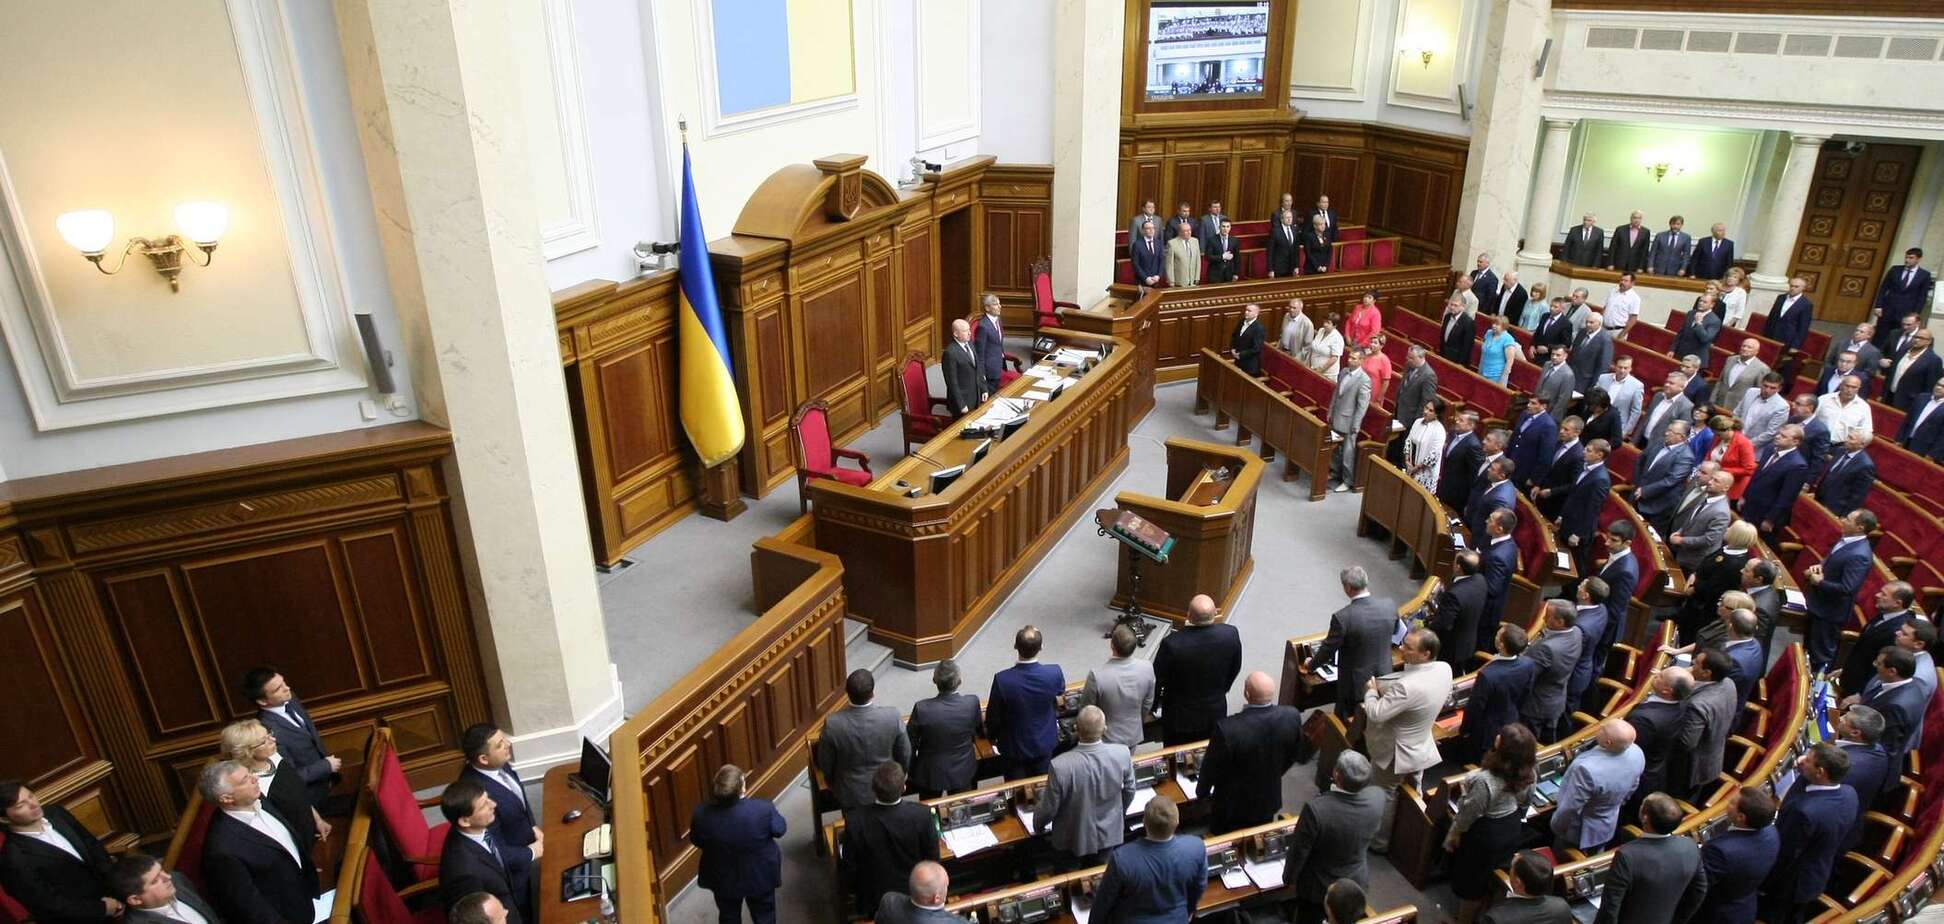 Раптово помер колишній народний депутат України. Фото